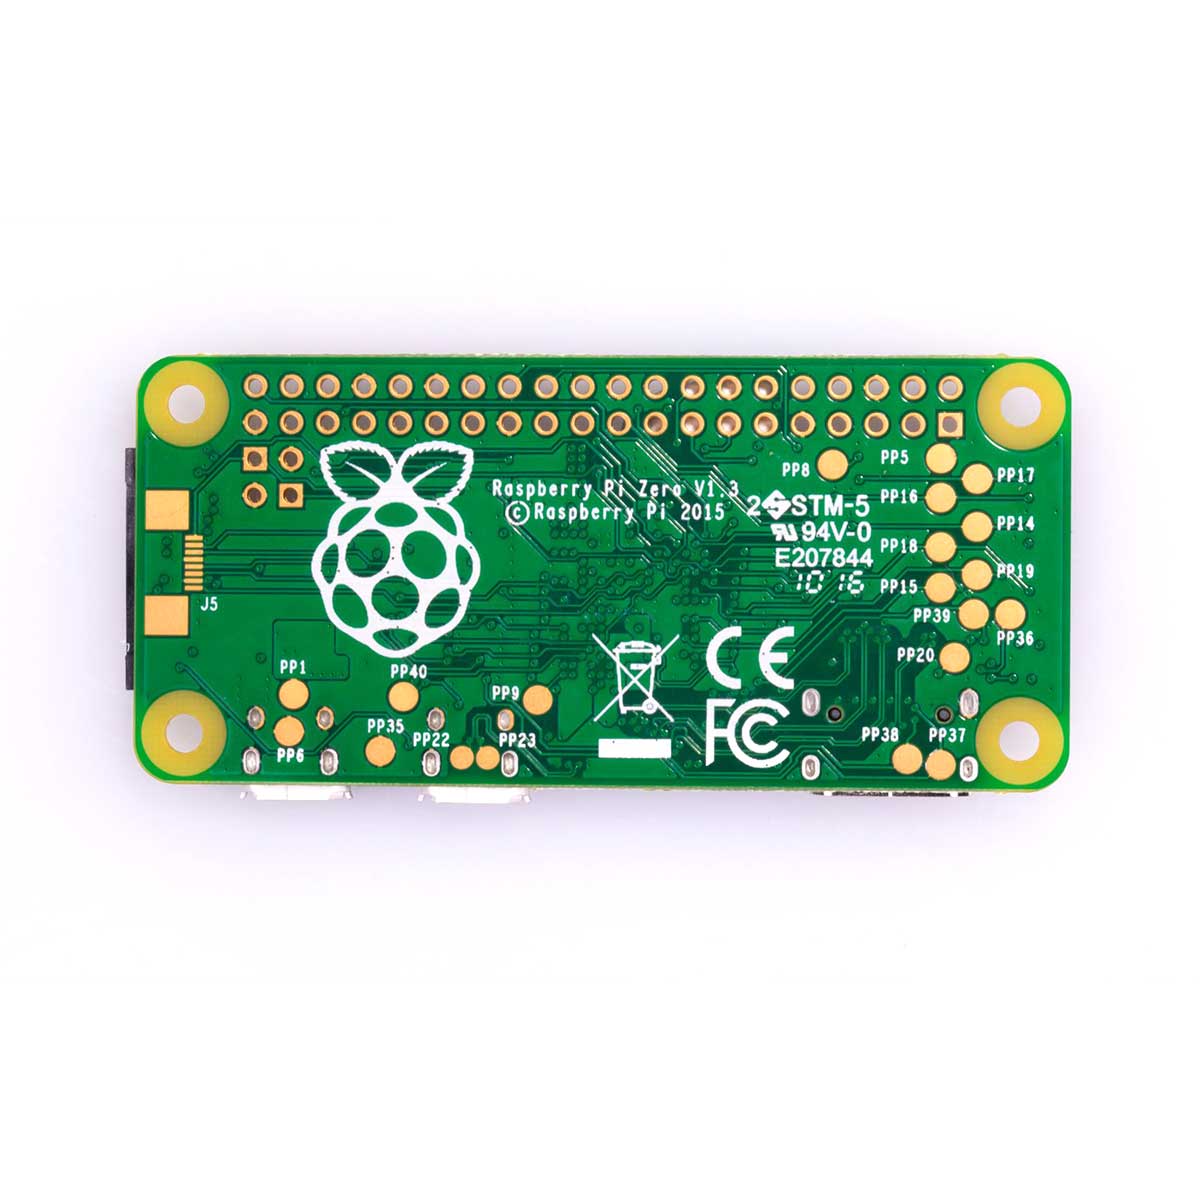 Raspberry Pi Zero Board